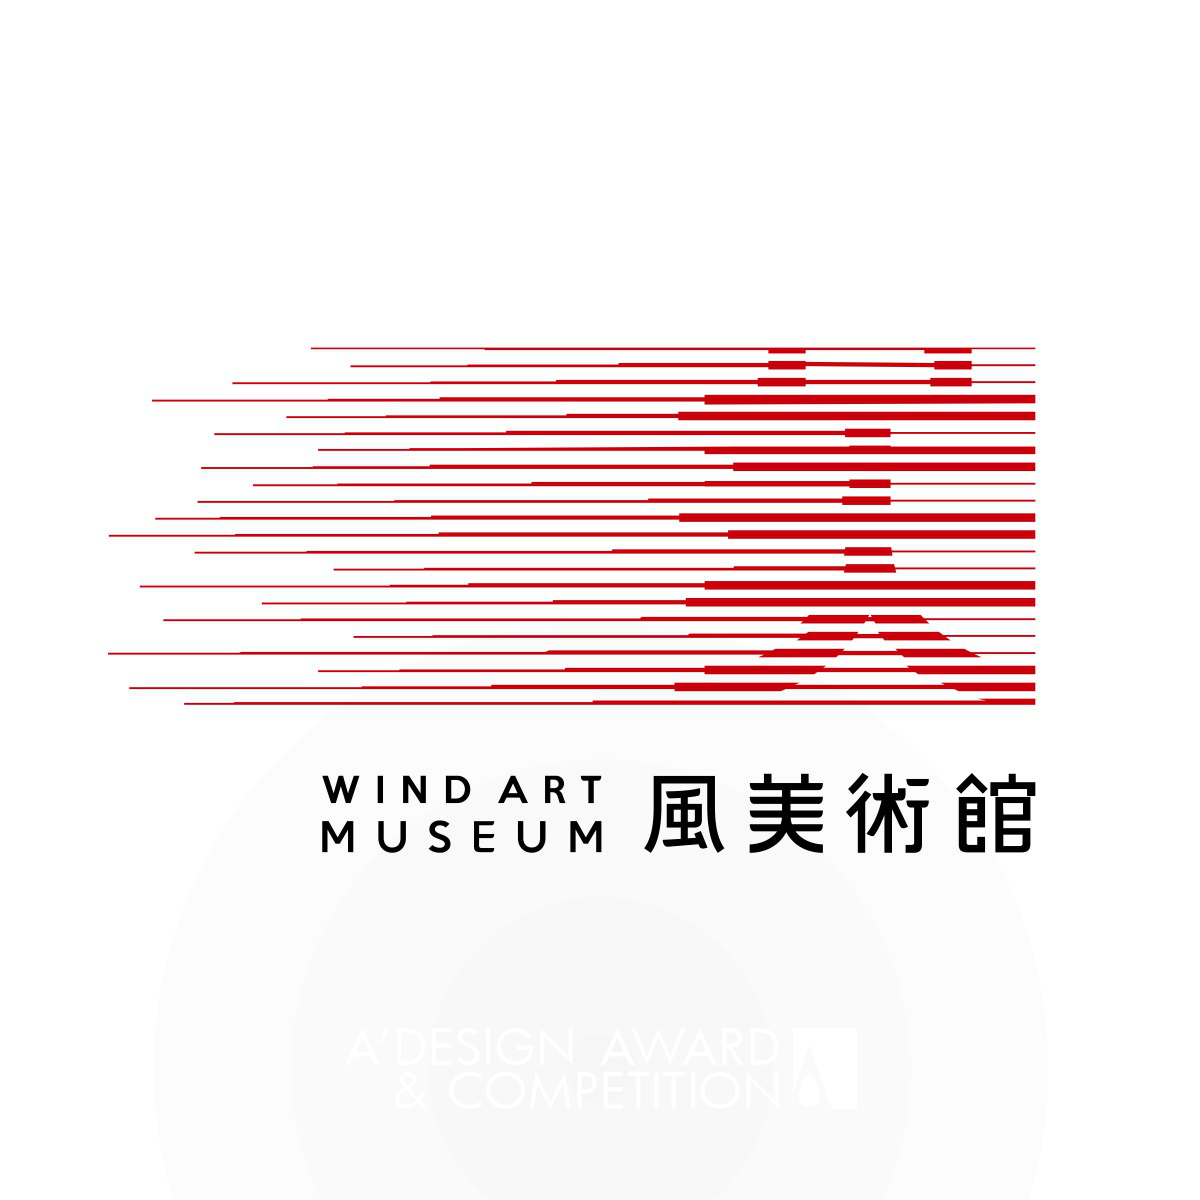 Wind Art Museum logo